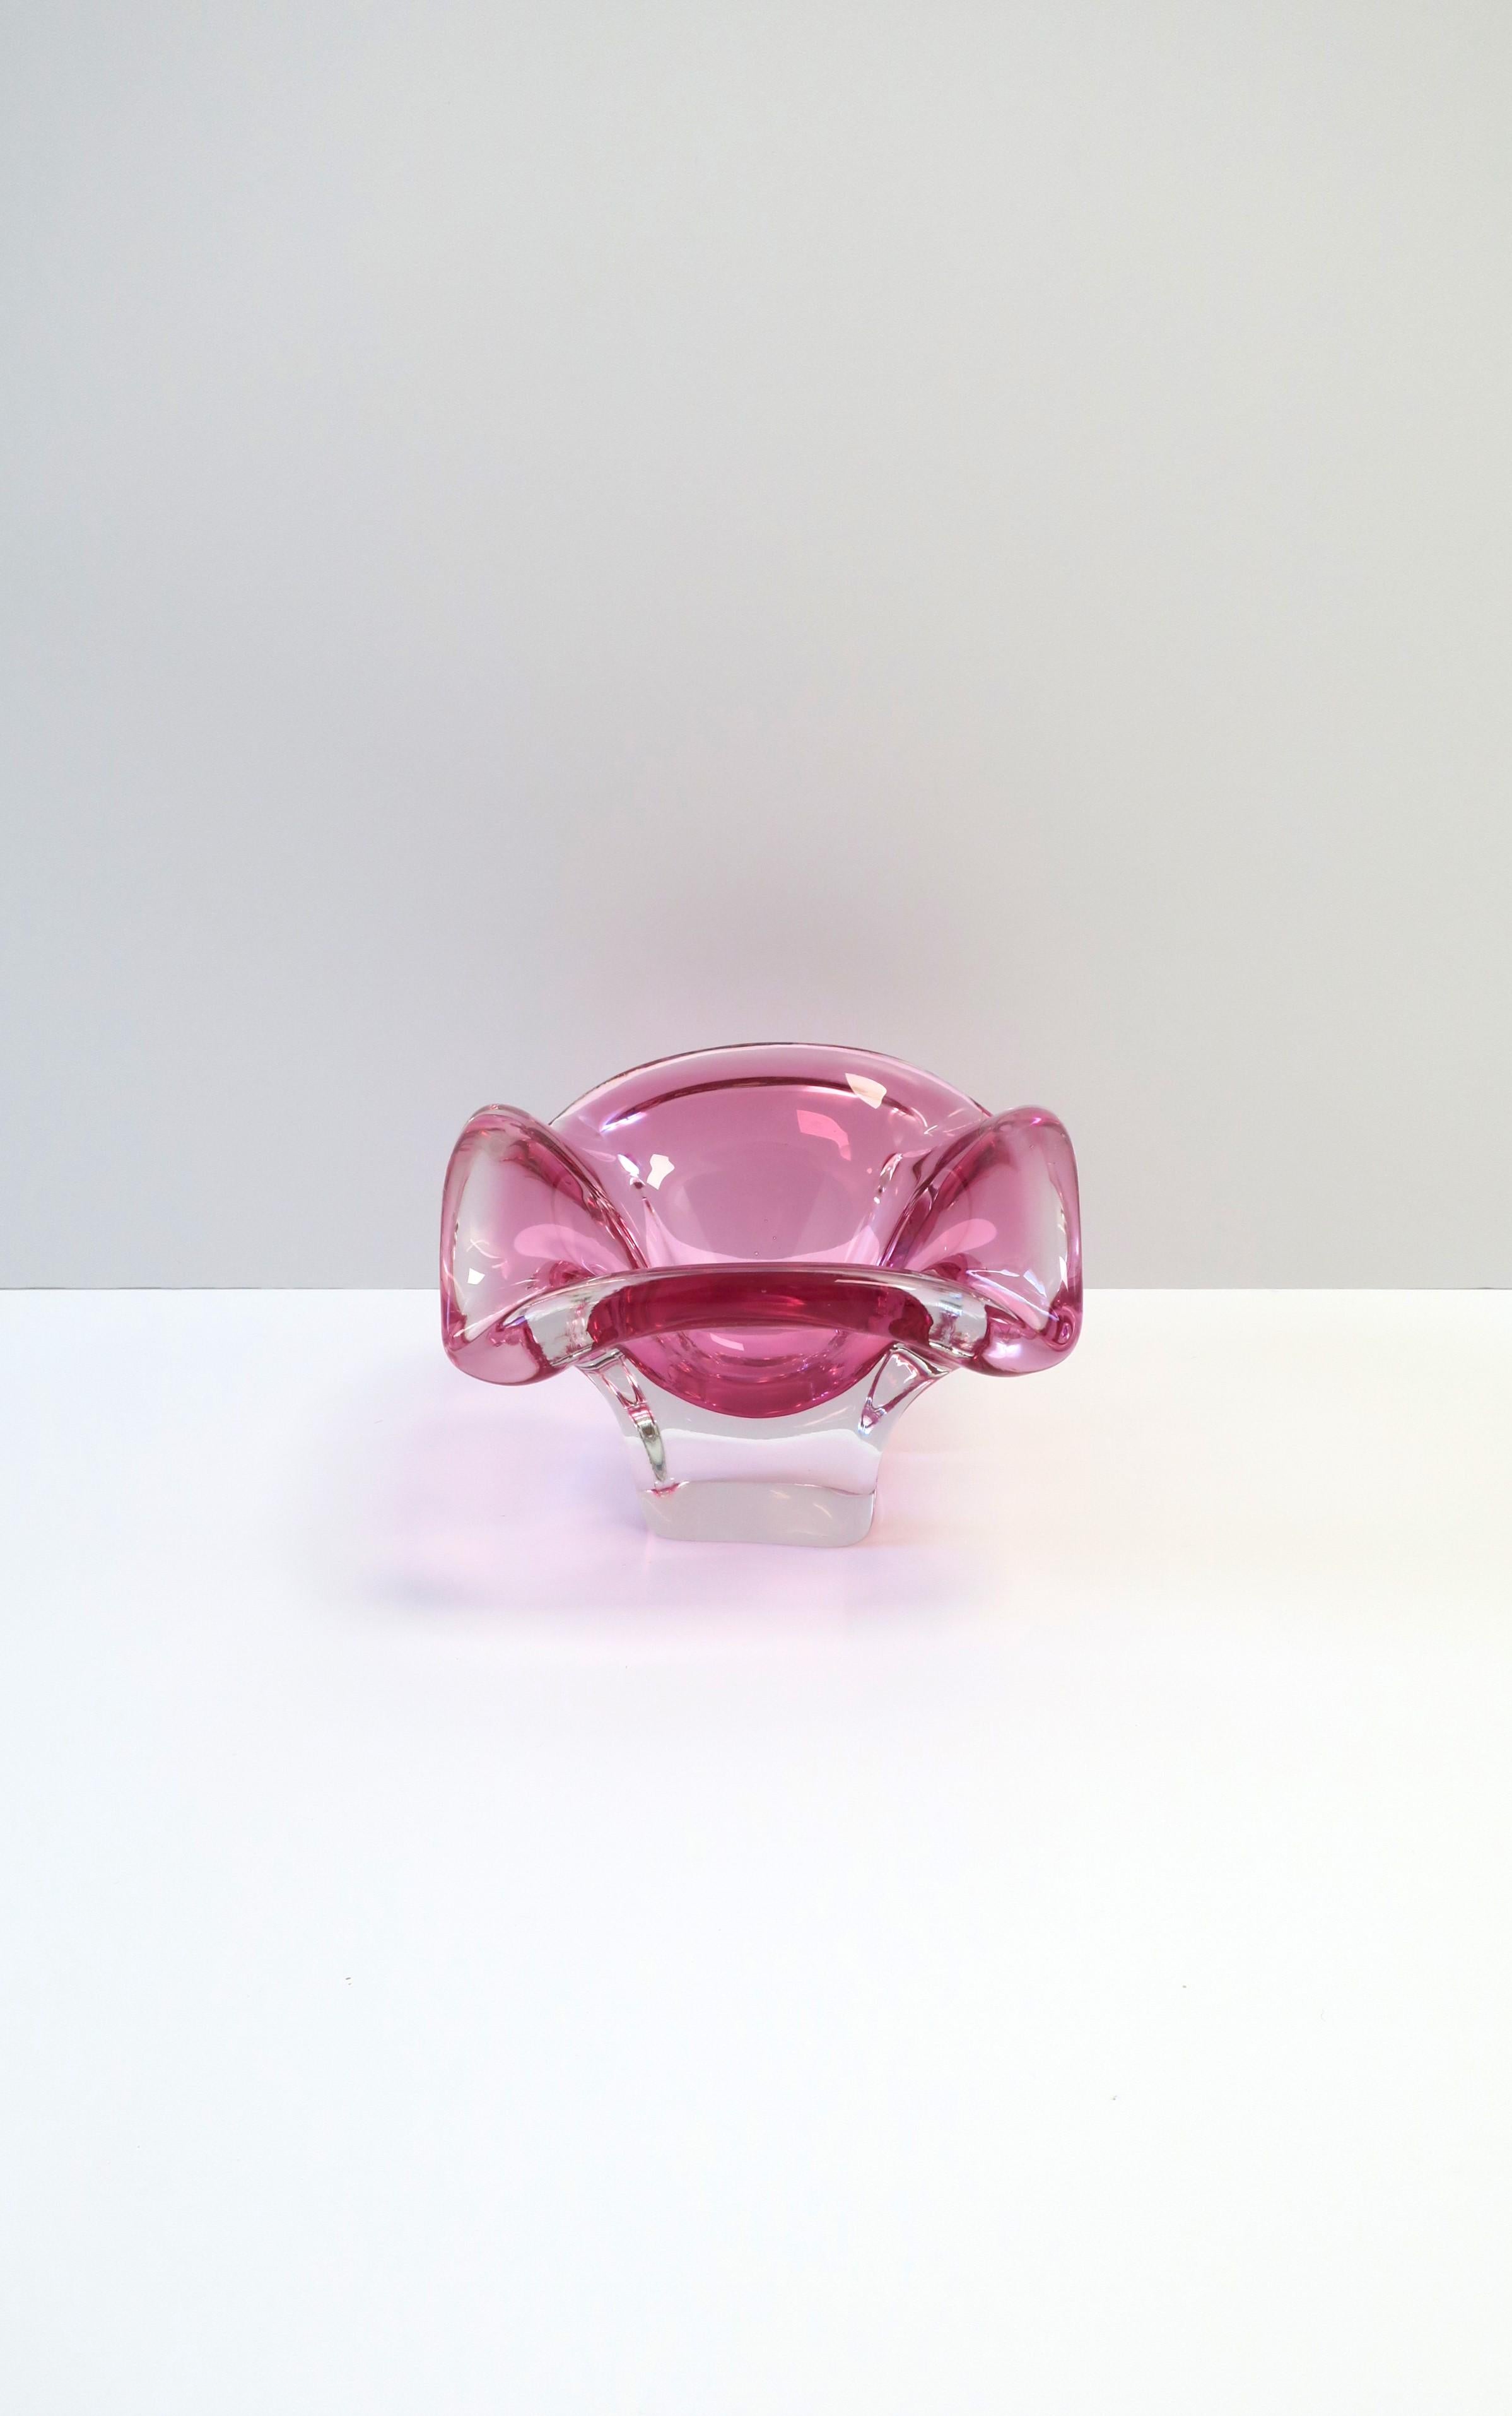 Un important bol ou cendrier en verre d'art transparent/clair et rose de Murano, vers le milieu du 20e siècle, Italie. La cuvette est conçue comme un piédestal, les coins sont doux et elle est destinée à supporter un produit du tabac. Le bol semble